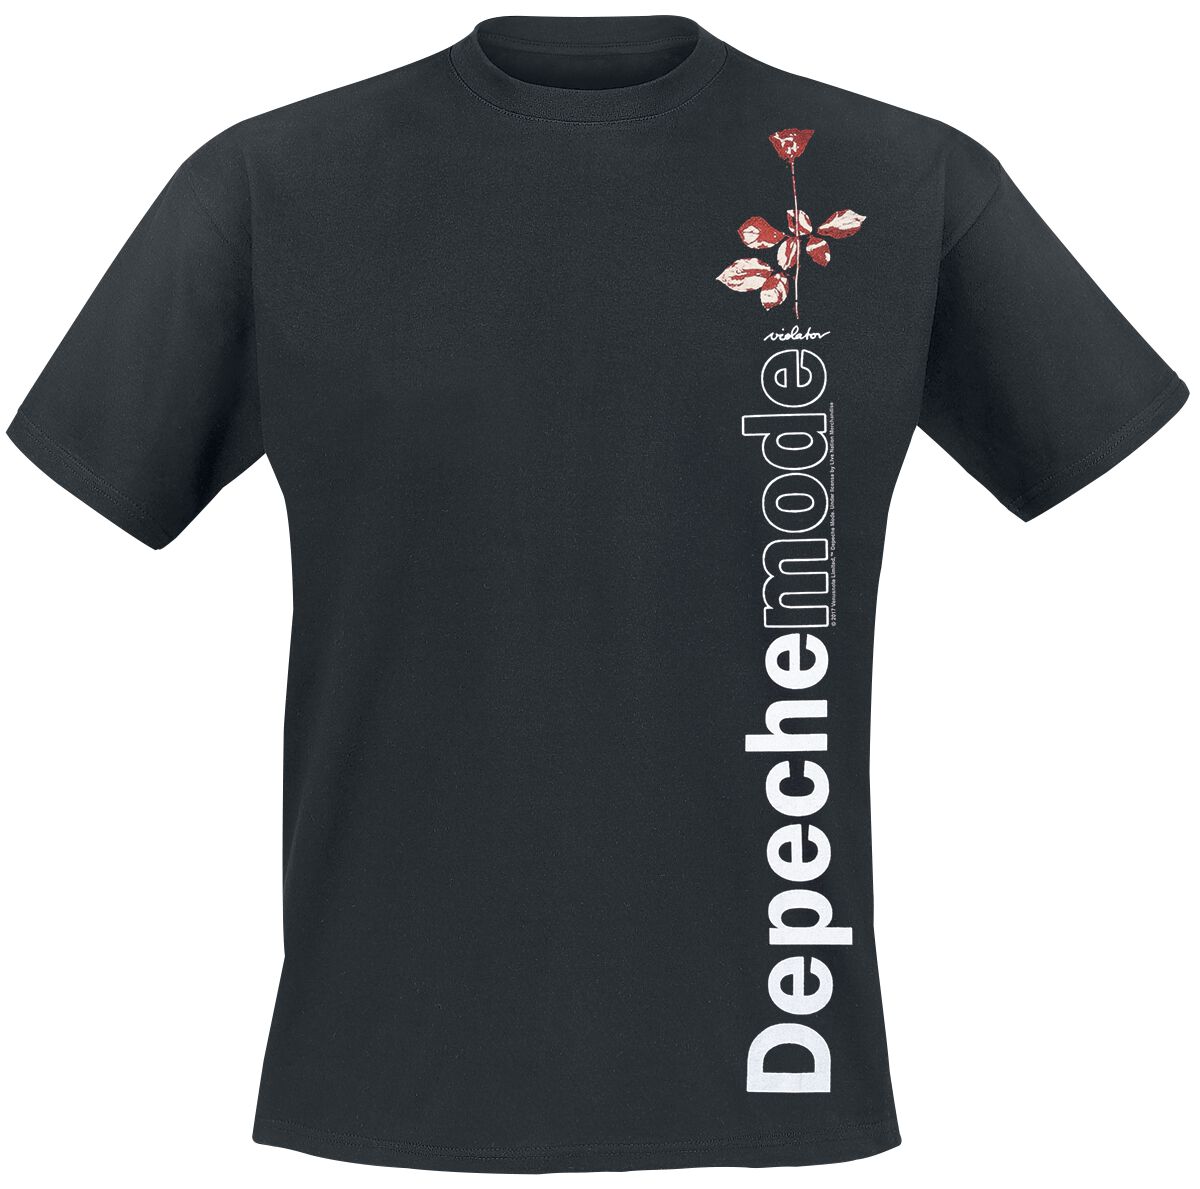 Depeche Mode T-Shirt - Violator Side Rose - S bis XXL - für Männer - Größe XXL - schwarz  - Lizenziertes Merchandise!